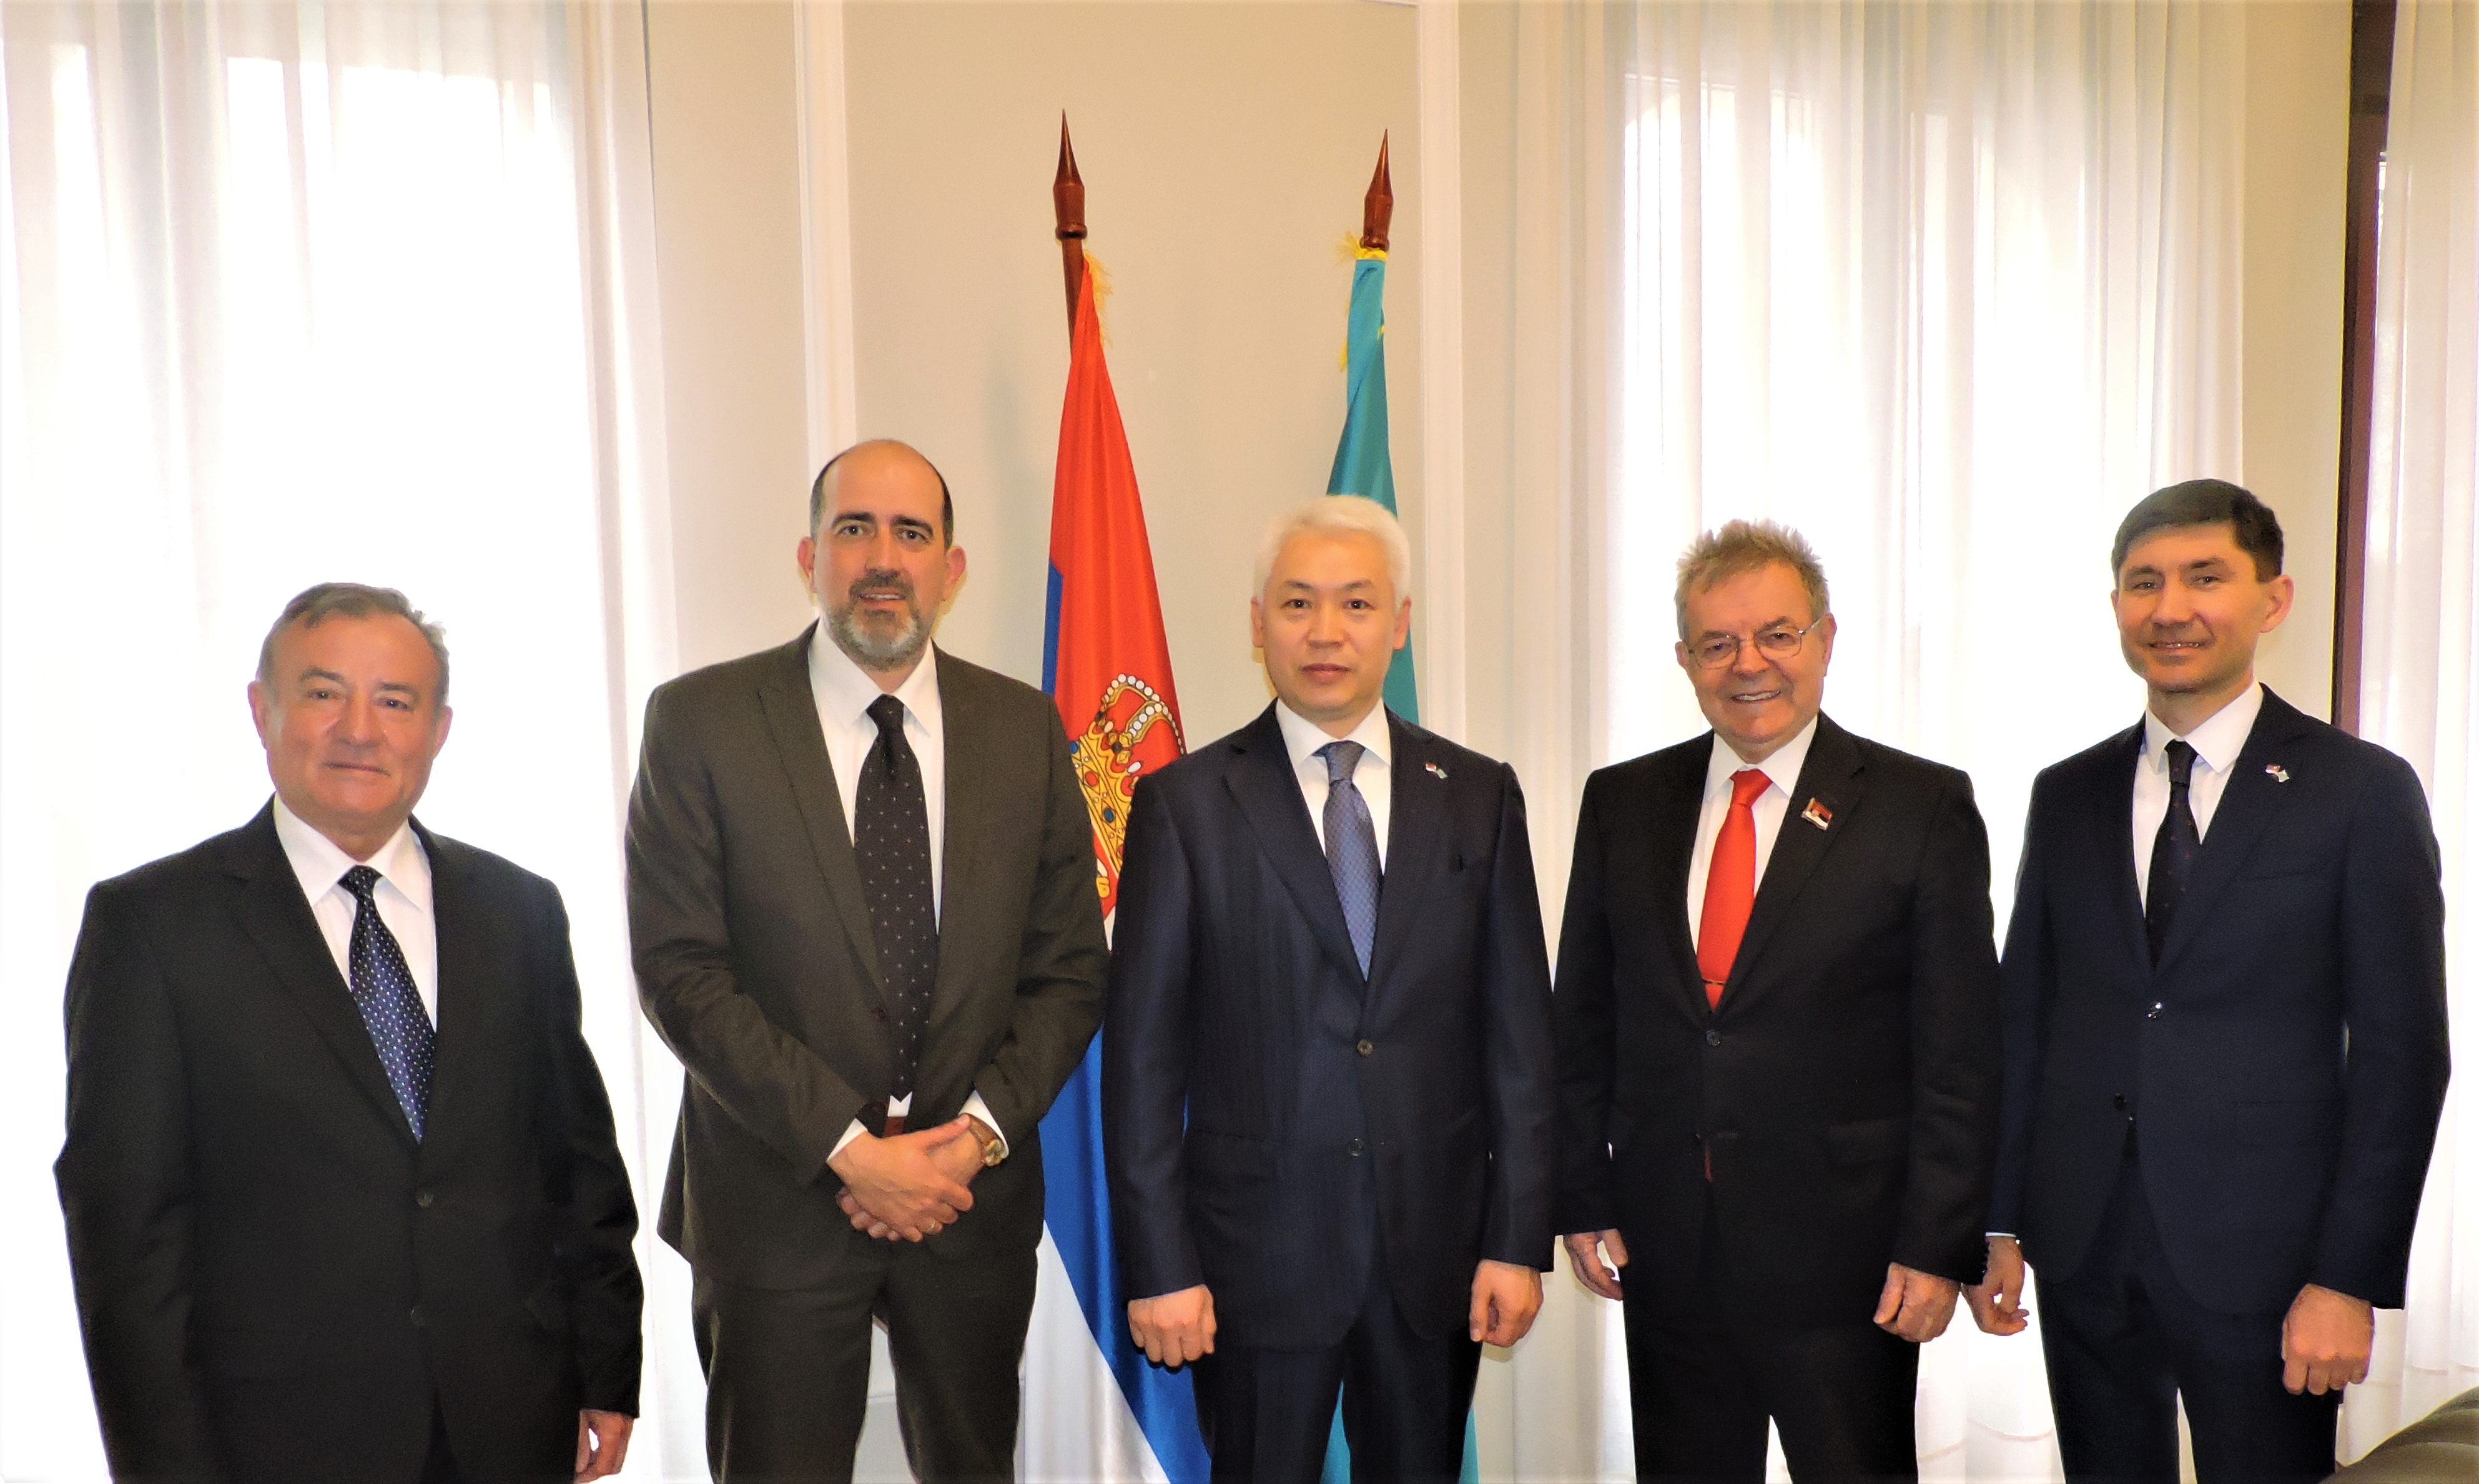 Стручна заједница Србије приметила је свеобухватност програма модернизације политичког система Казахстана